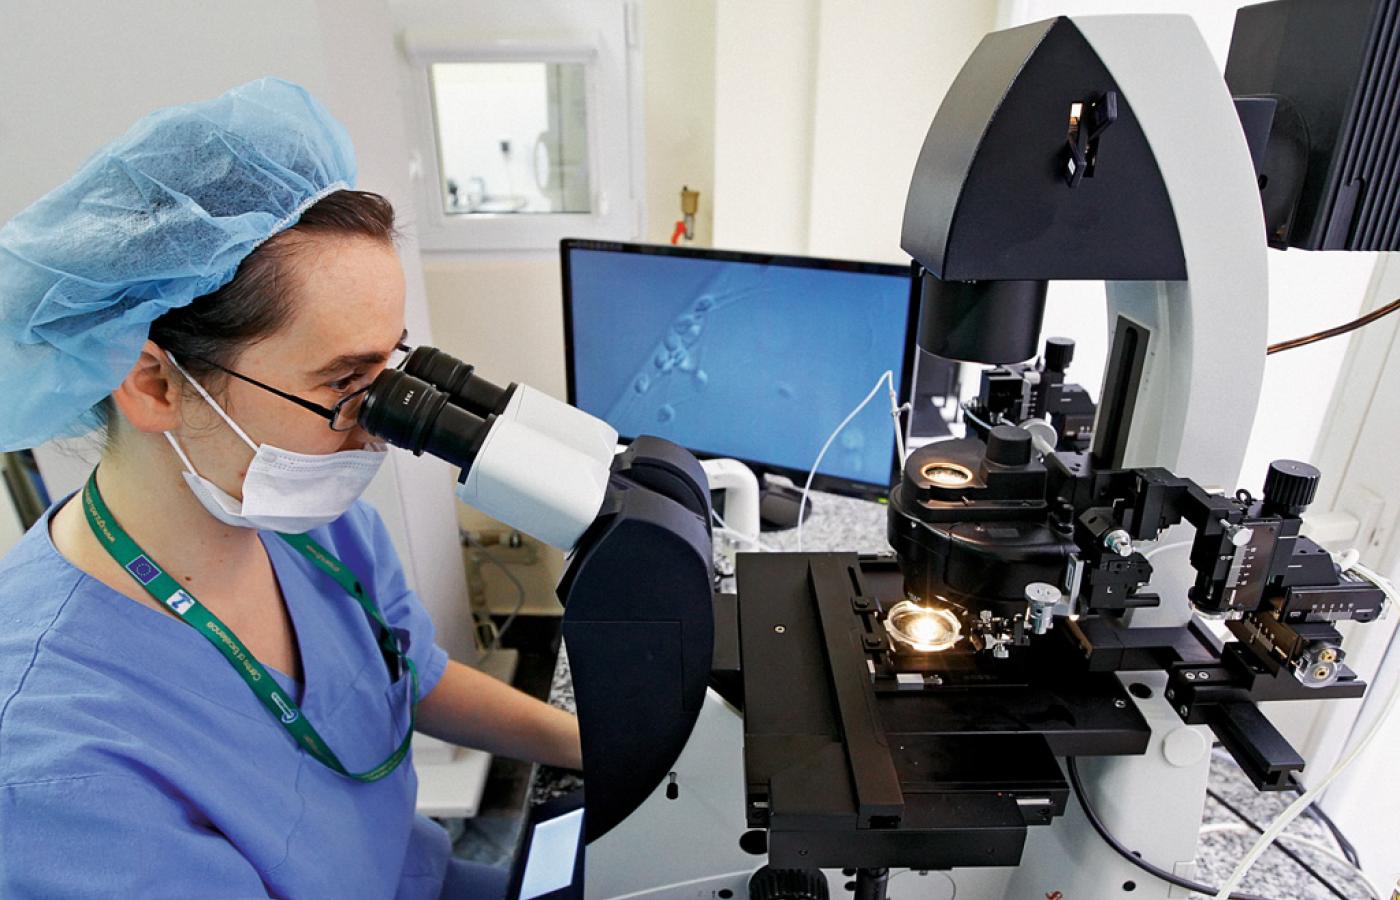 Po dwukrotnym odwirowaniu nasienie ogląda pod mikroskopem embriolog, który ocenia stan plemników